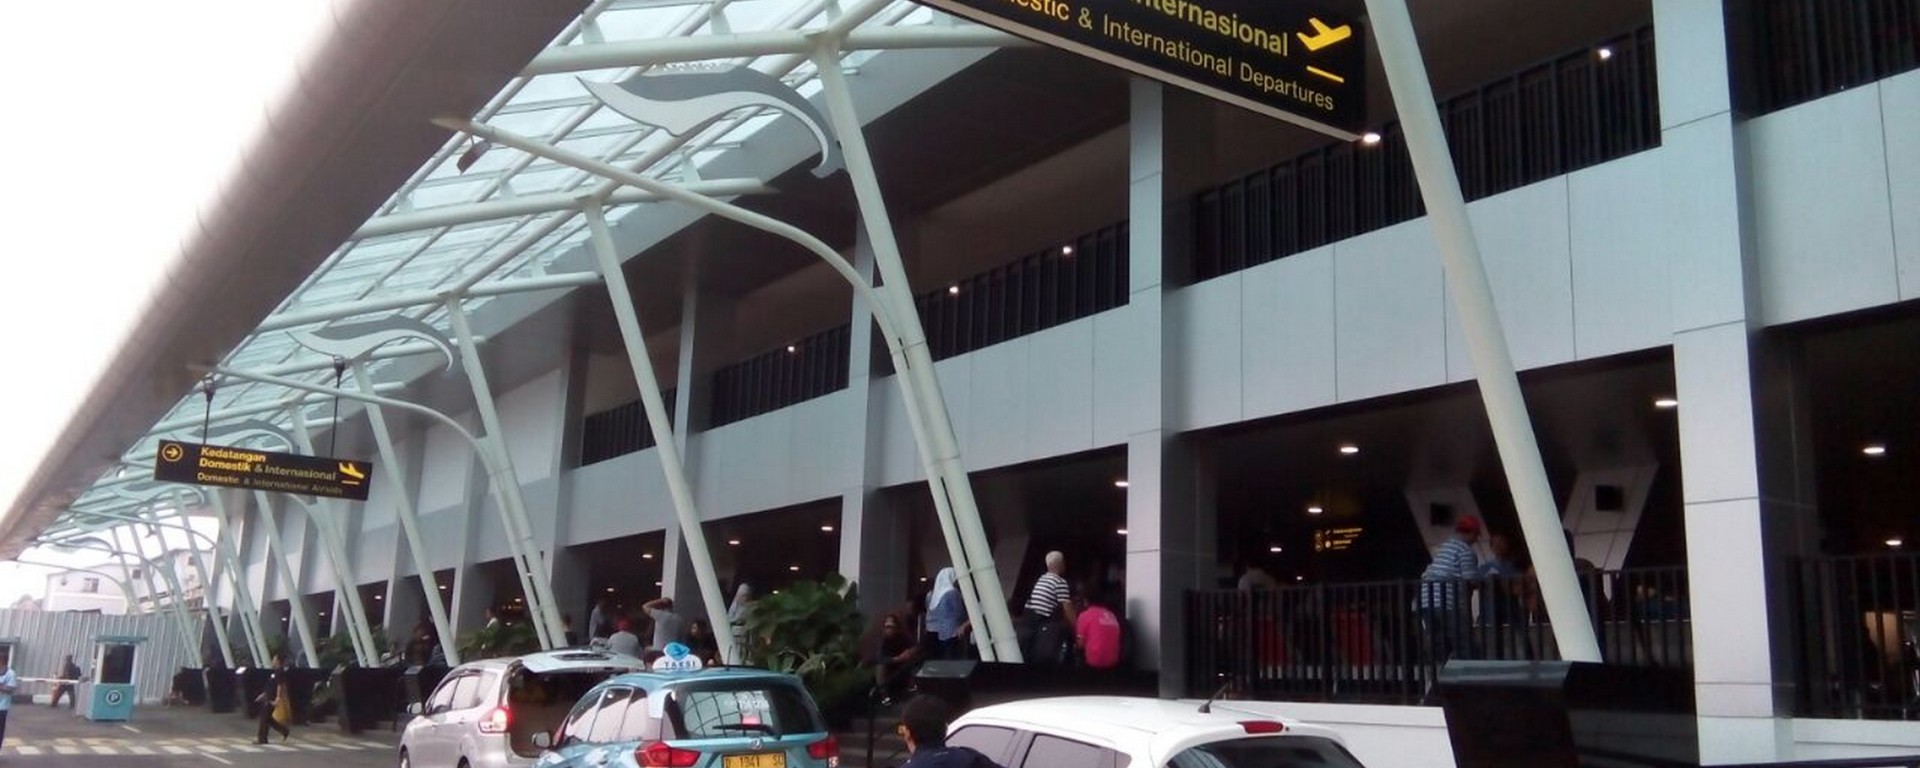 مطار حسين ساسترا نيجارا باندونق في إندونيسيا